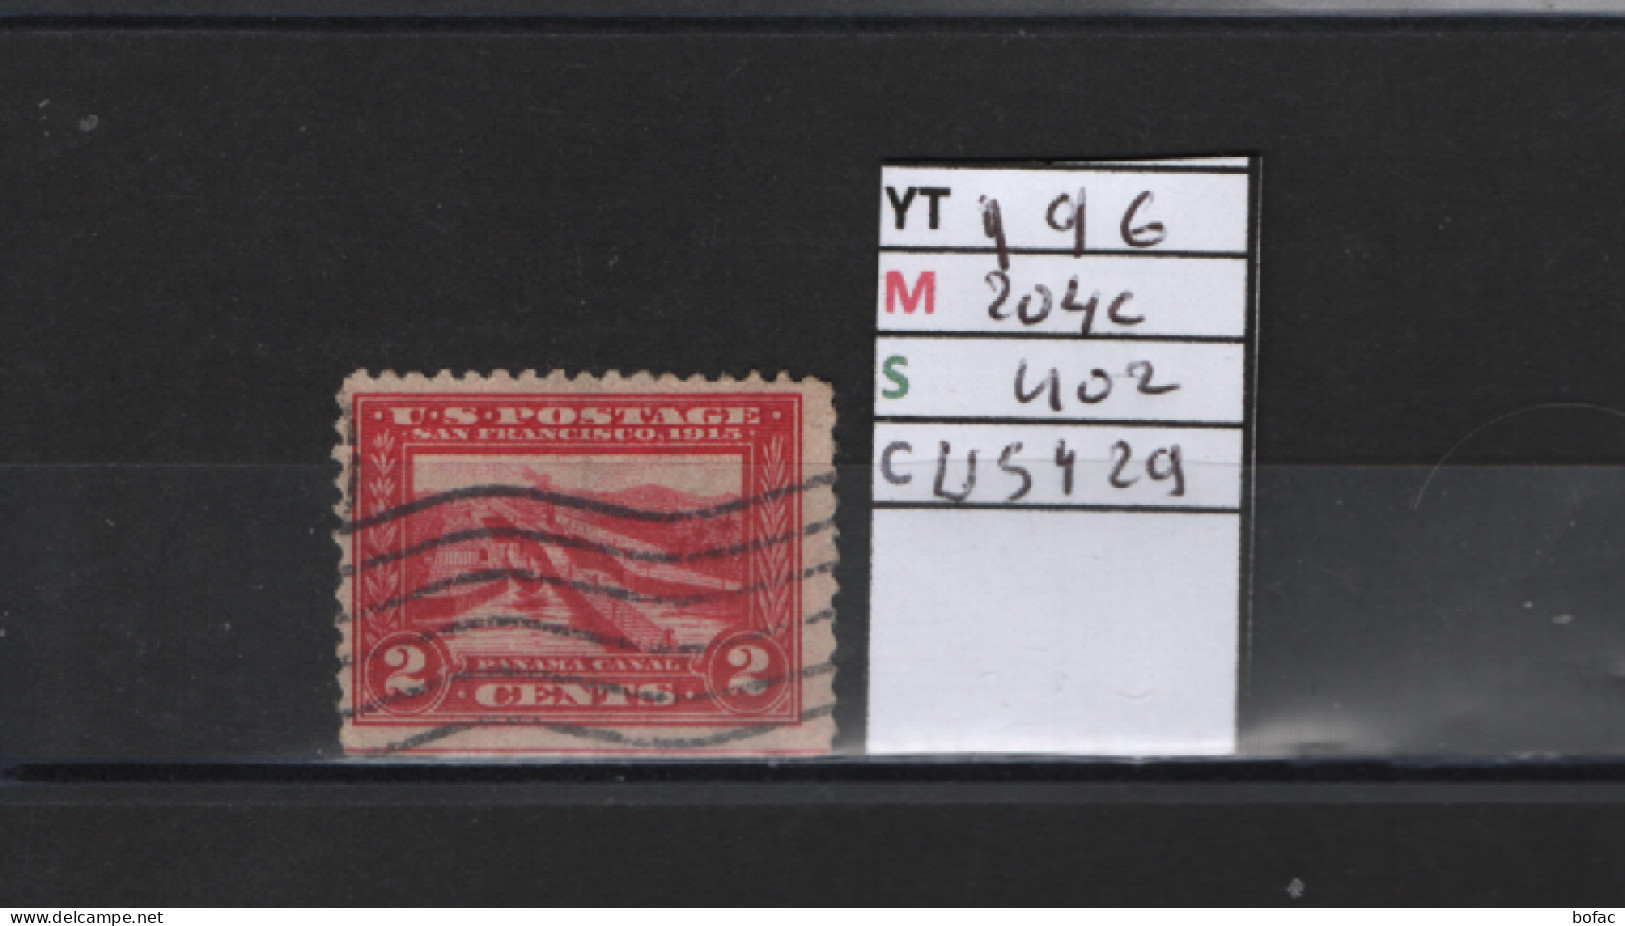 PRIX FIXE Obl 196 YT 204C MIC US402 SCO US429 GIB Canal De Panama 1912 1915 Etats Unis 58/06 Dentelé 3 Cotés - Used Stamps